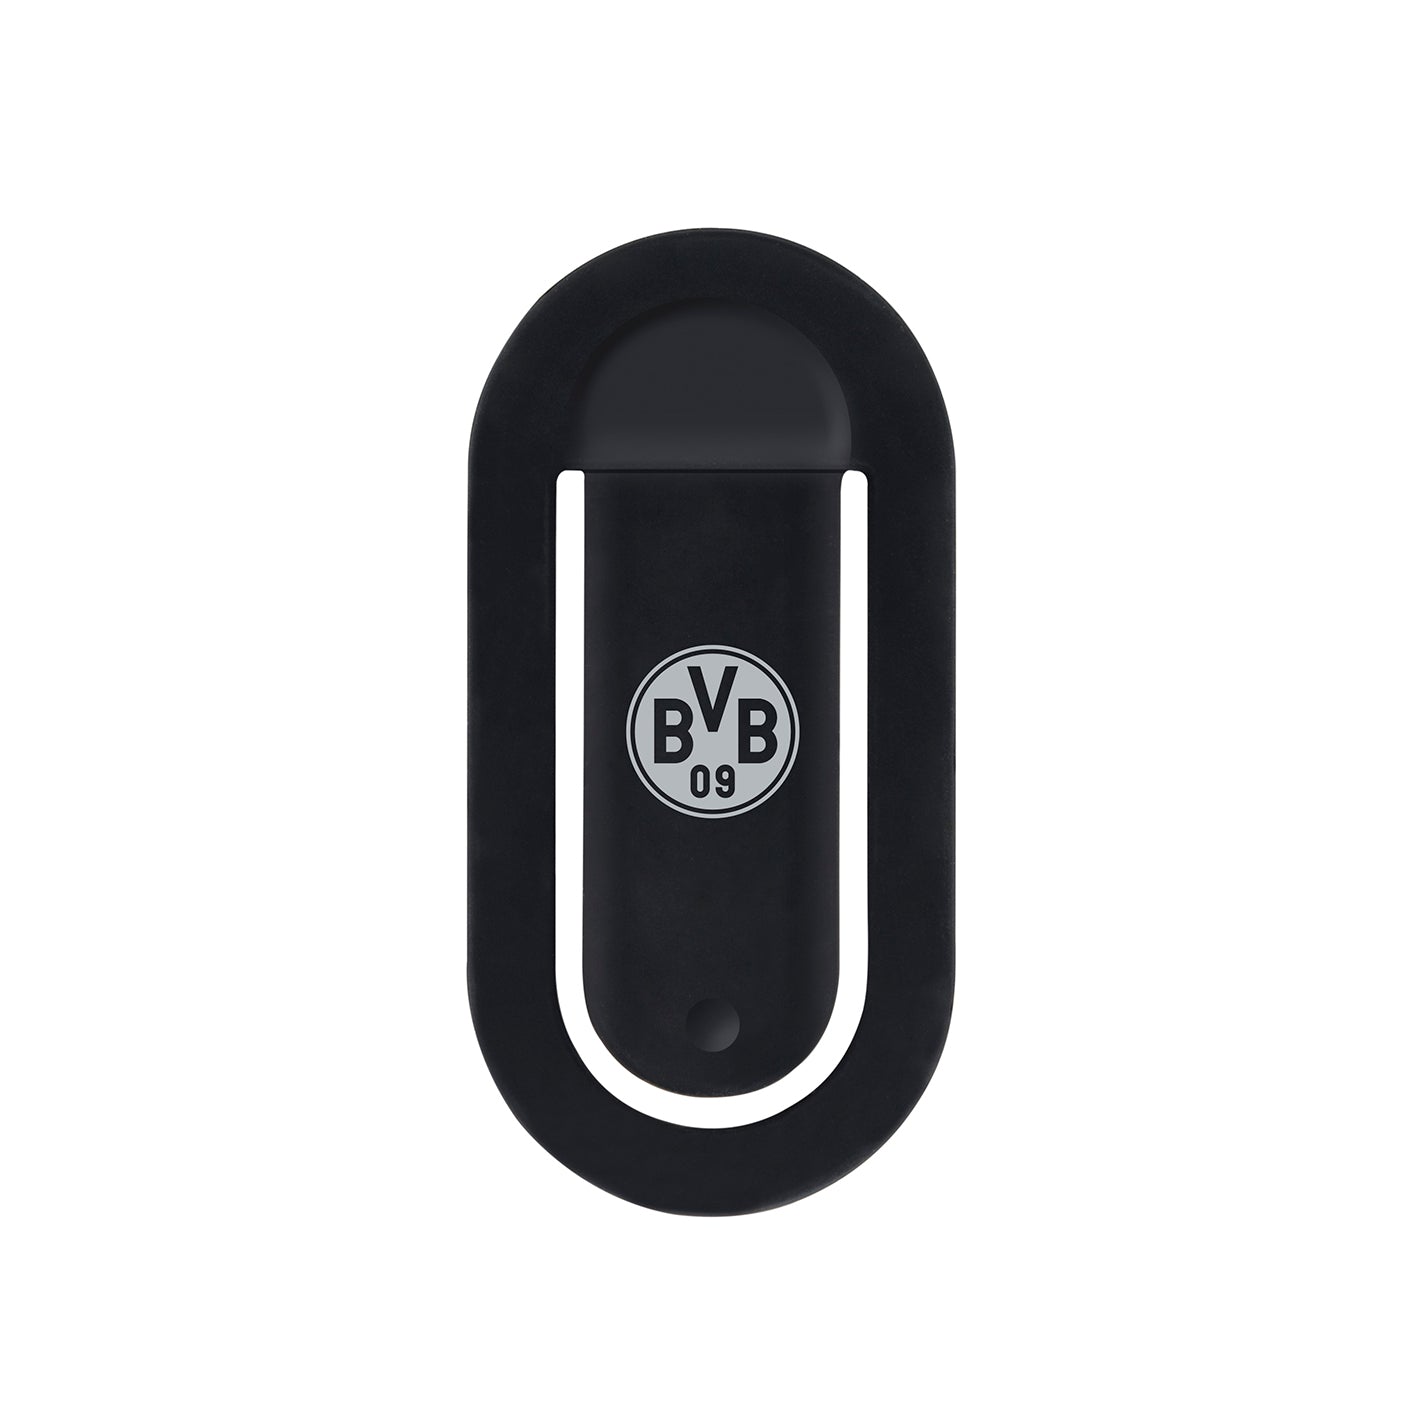 Handyhalterung mit BVB-Logo - Smartphone-Halterung